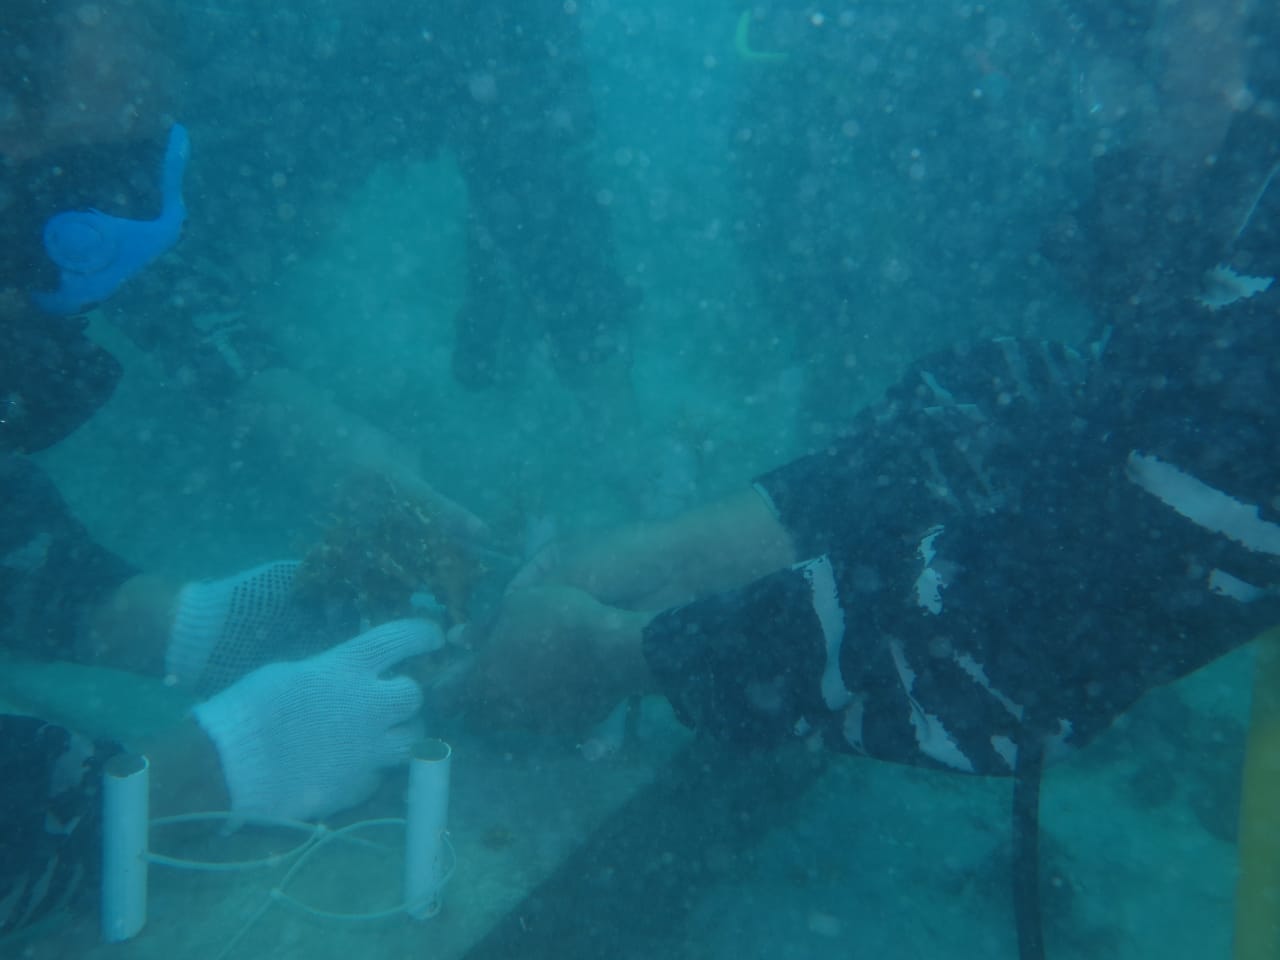 Tampak para penyelam menanam terumbu karang di dasar laut Pulau Sangiang, Banten.